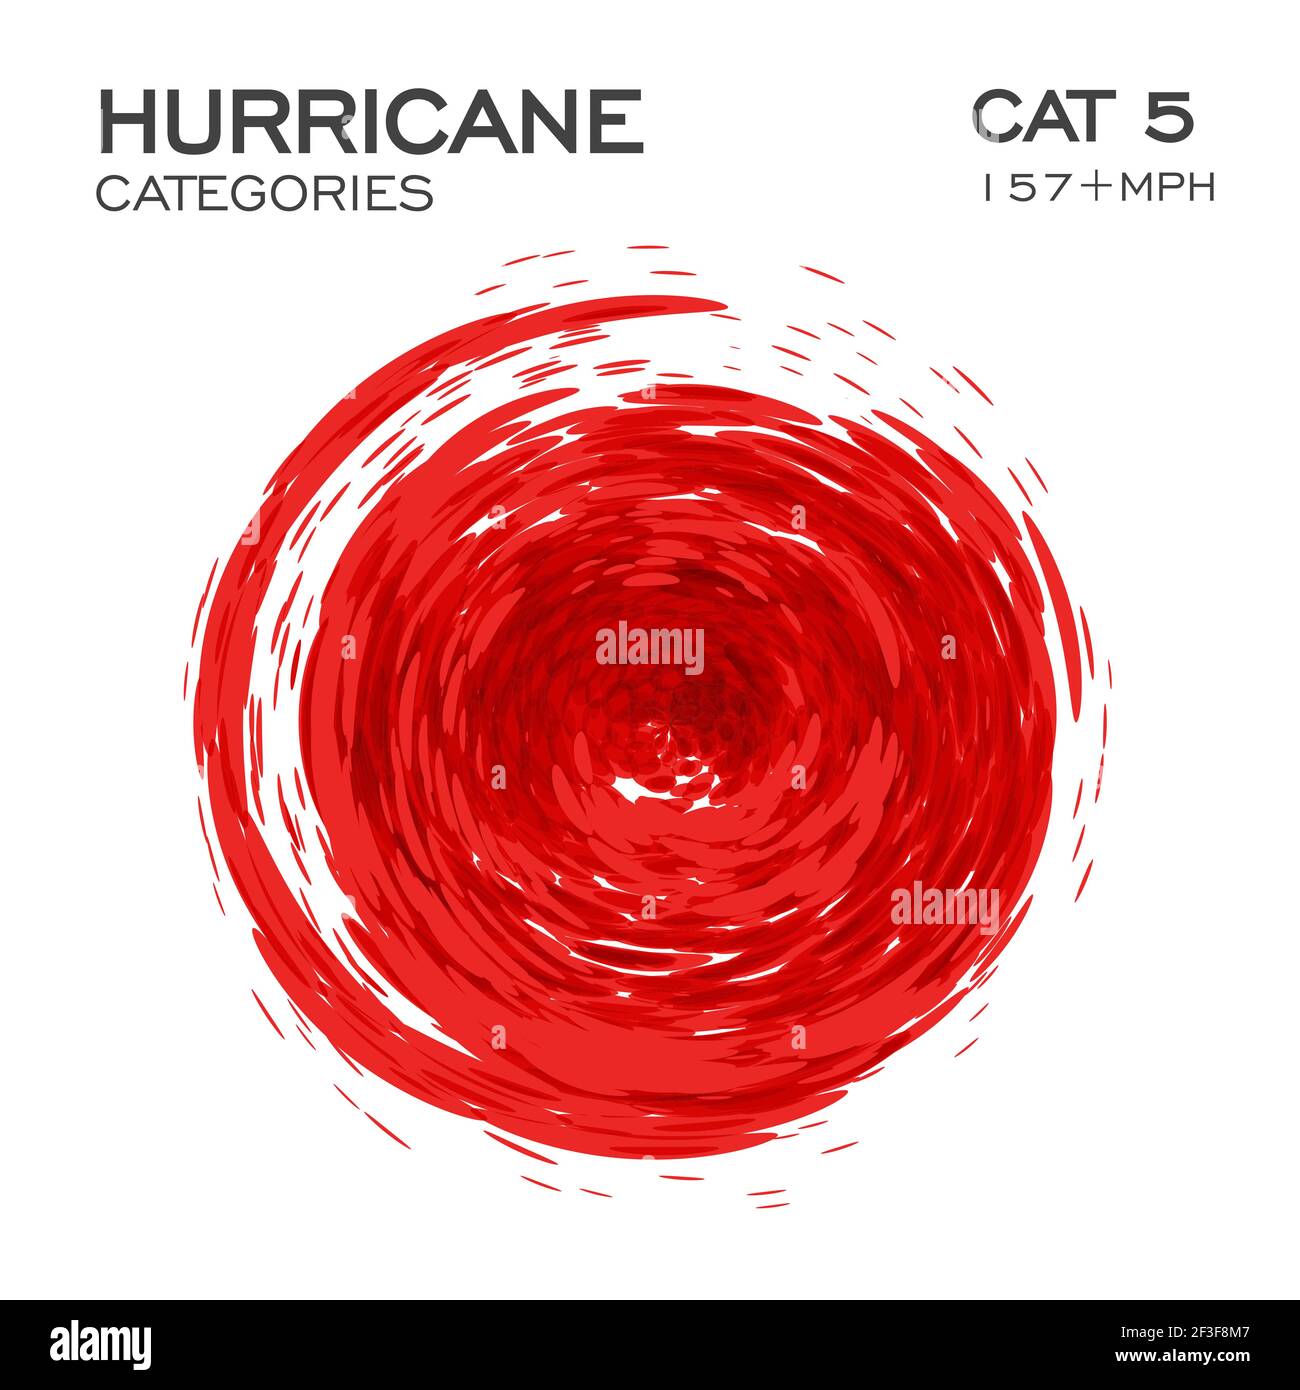 Kategorie 5 Hurrikan Infografik Element für Hurrikan Nachrichten und Warnungen. Wirbeln Trichter von Wolken und Staub, Vektor-Illustration. Stock Vektor